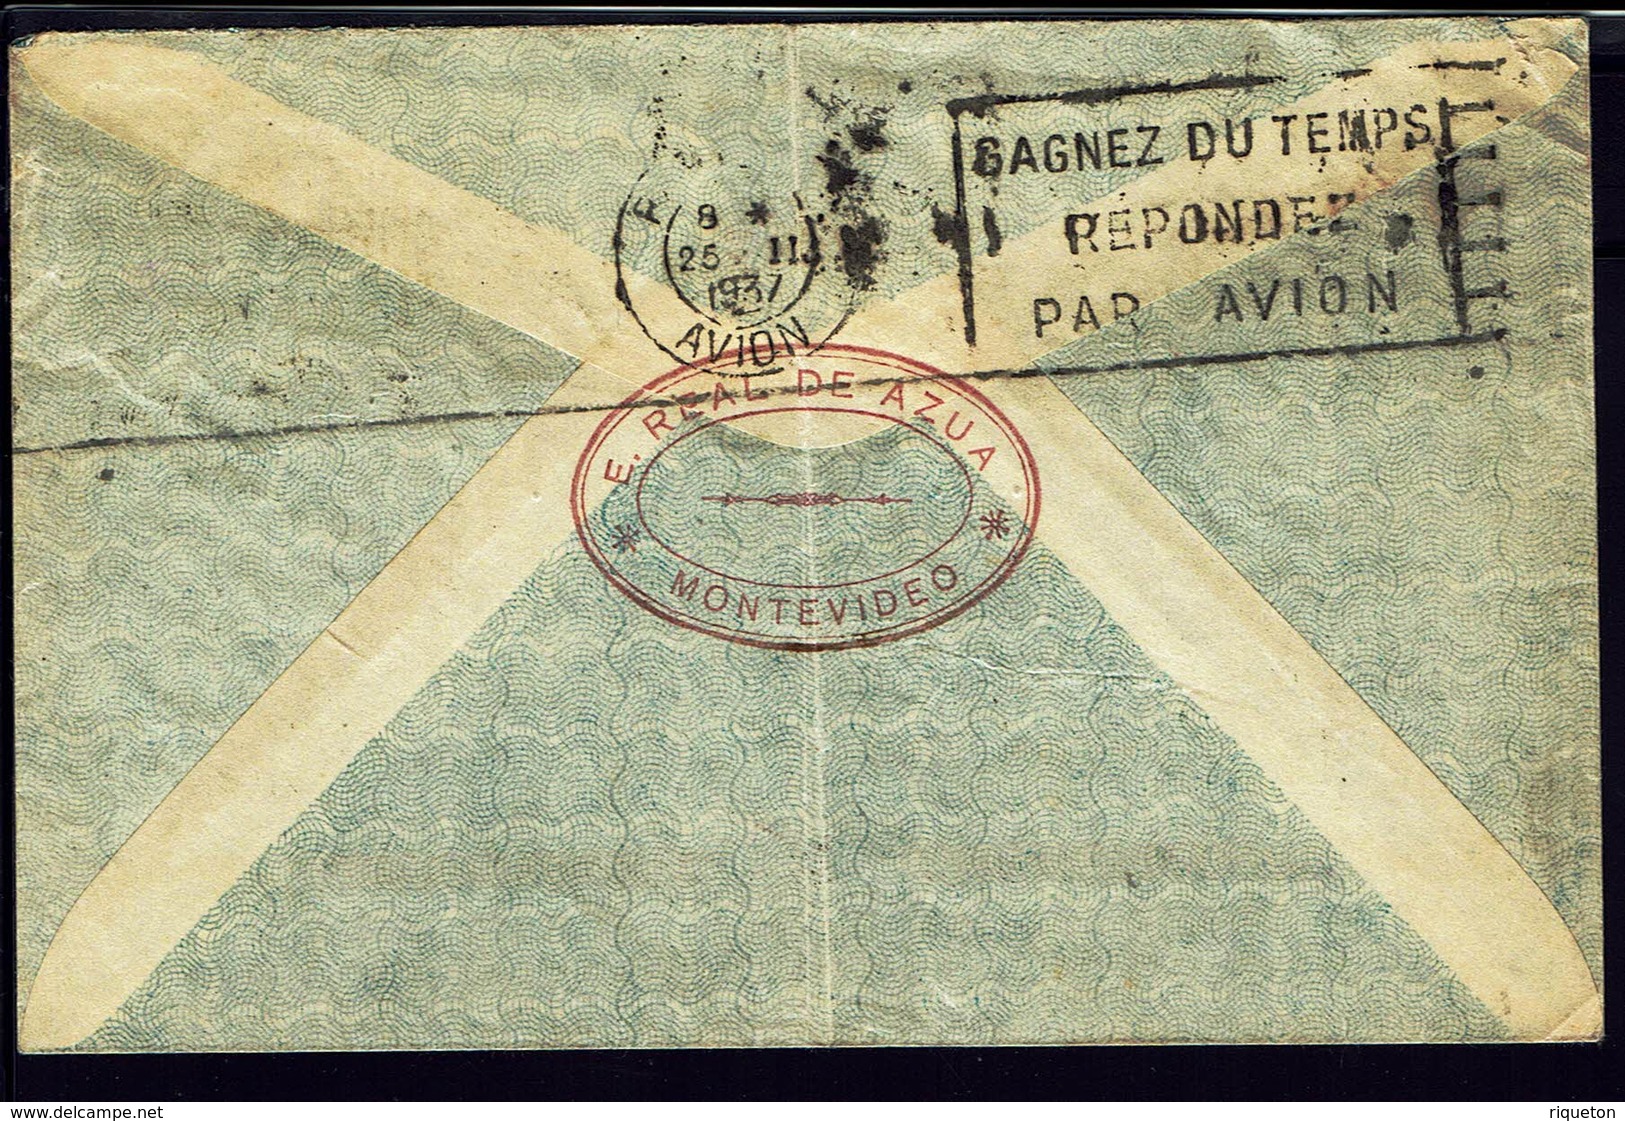 URUGUAY - 1937 - Affranchissement 62 Ct Aéréo Sur Enveloppe De Montevideo Par Avion, Via Paris Pour ULM-Donau (ALL) B/TB - Uruguay